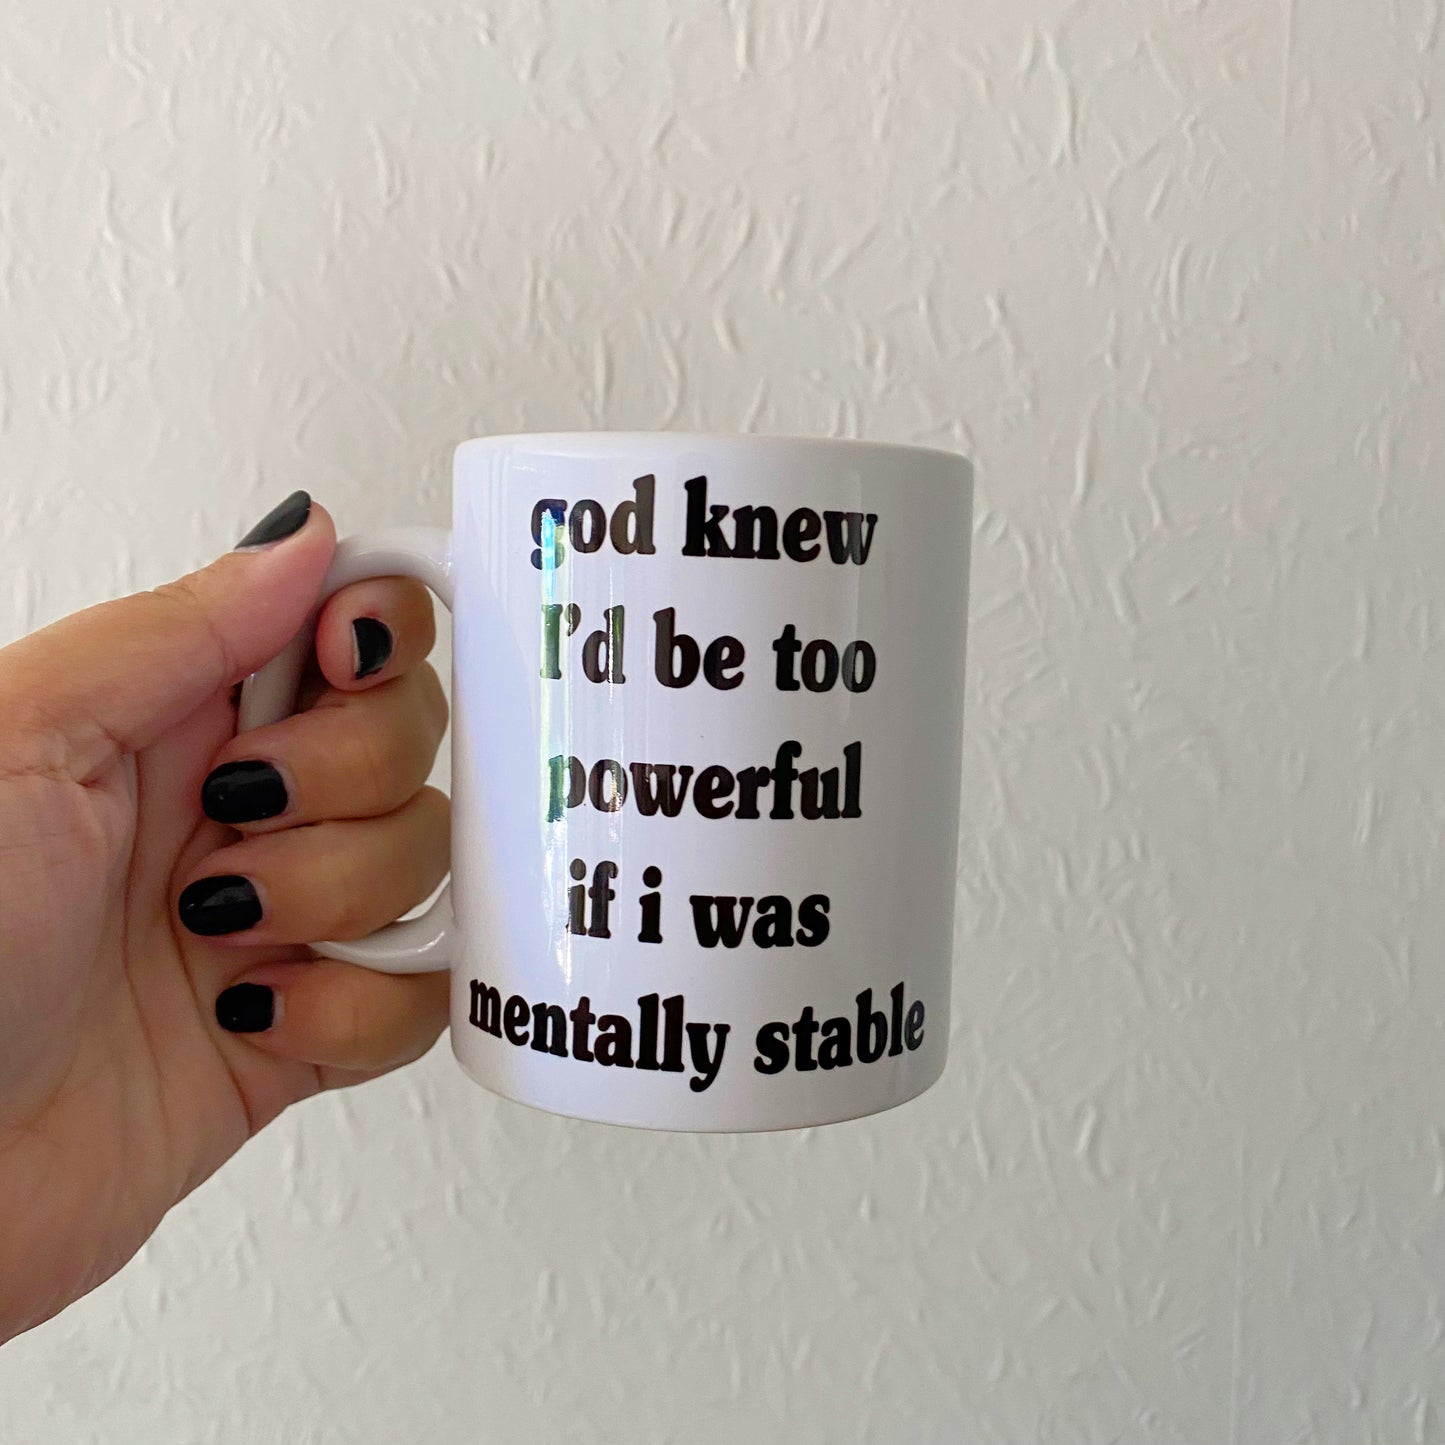 Mentally stable mug